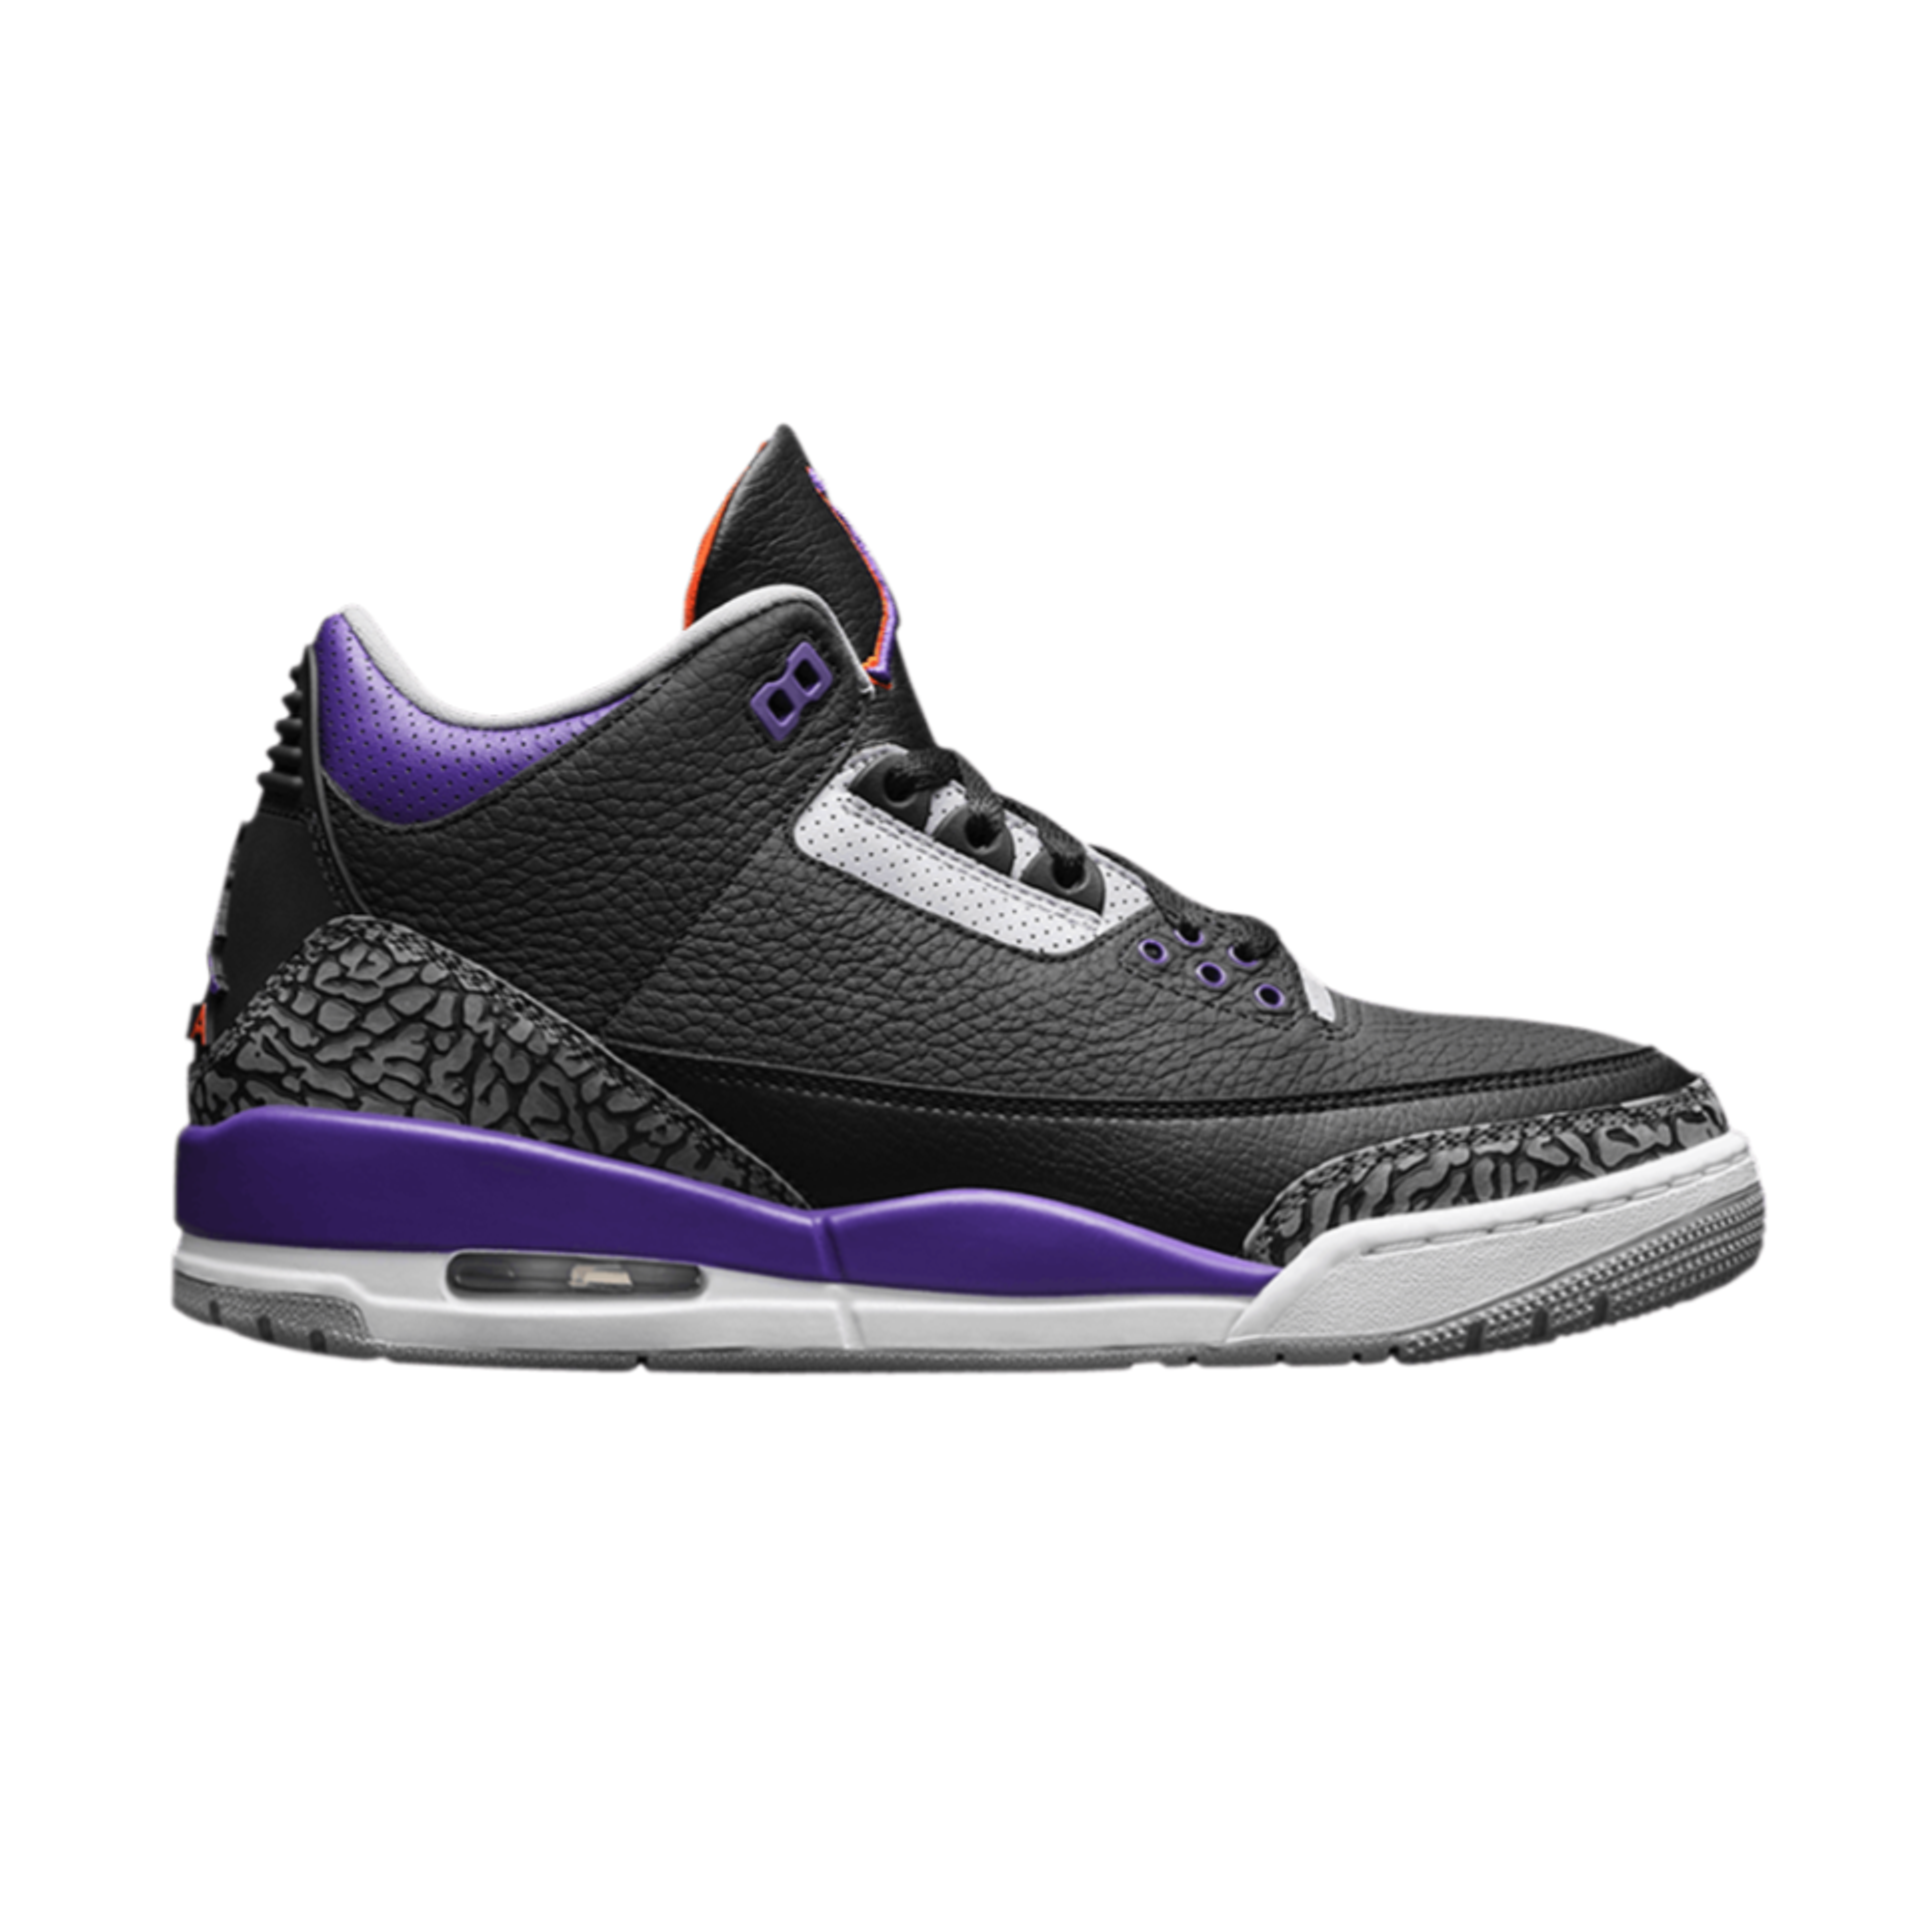 Air Jordan 3 Retro 'Court Purple'